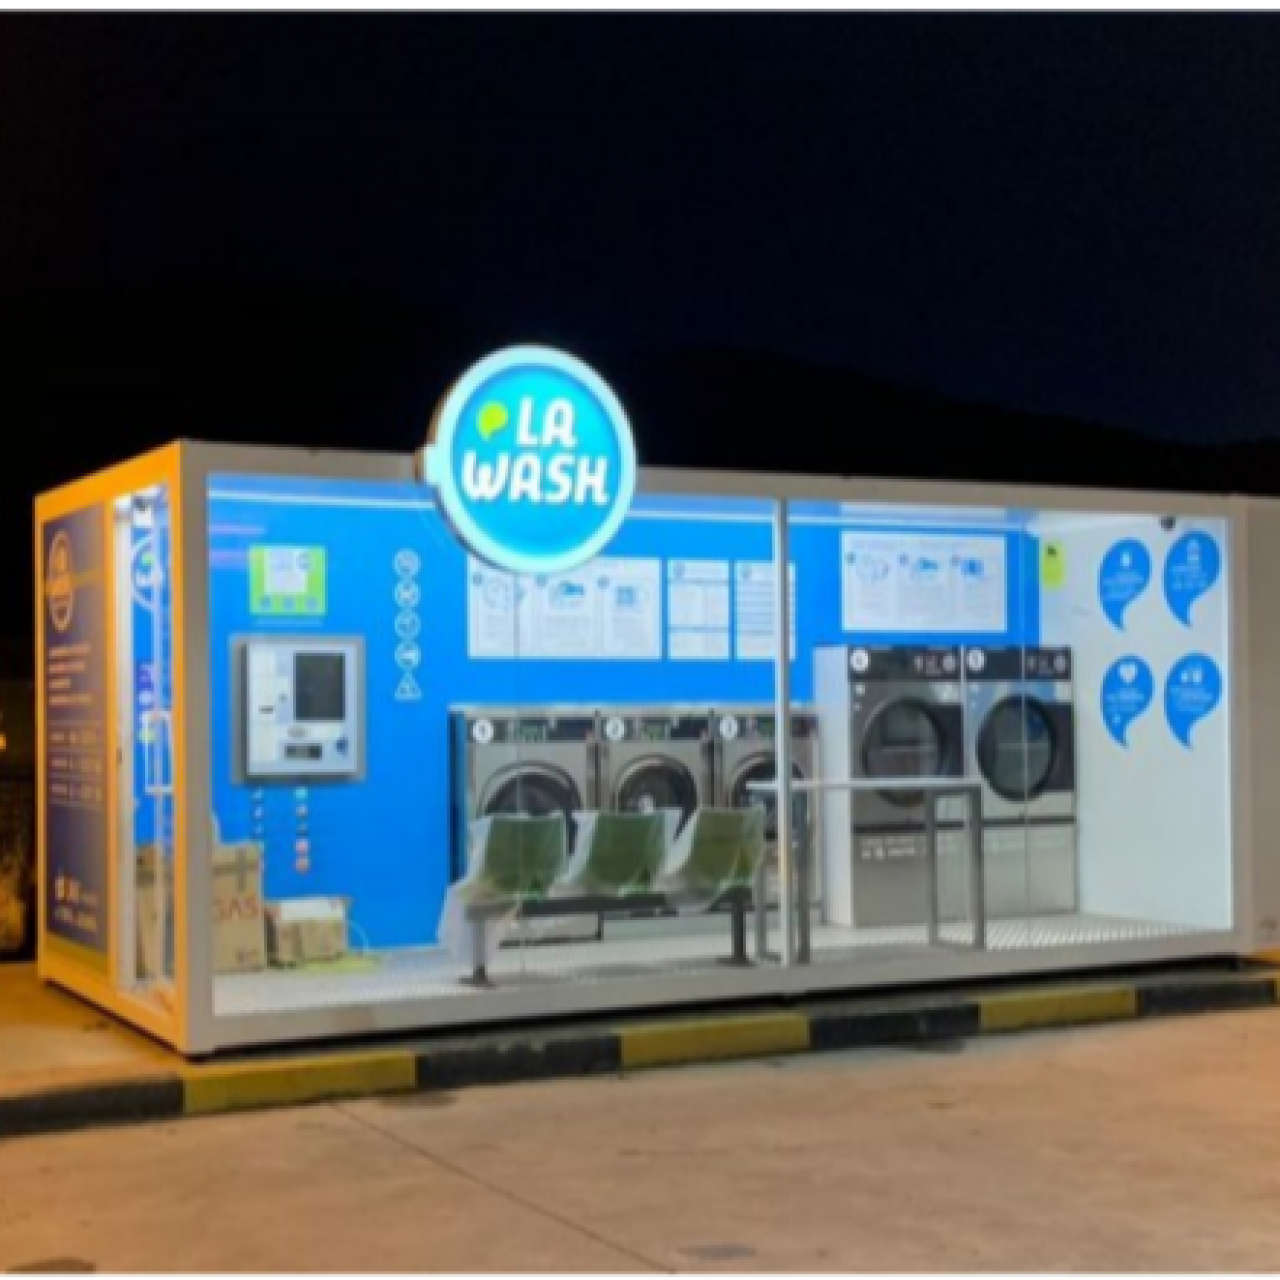 Lavanderías autoservicio La Wash en gasolineras, líderes en innovación